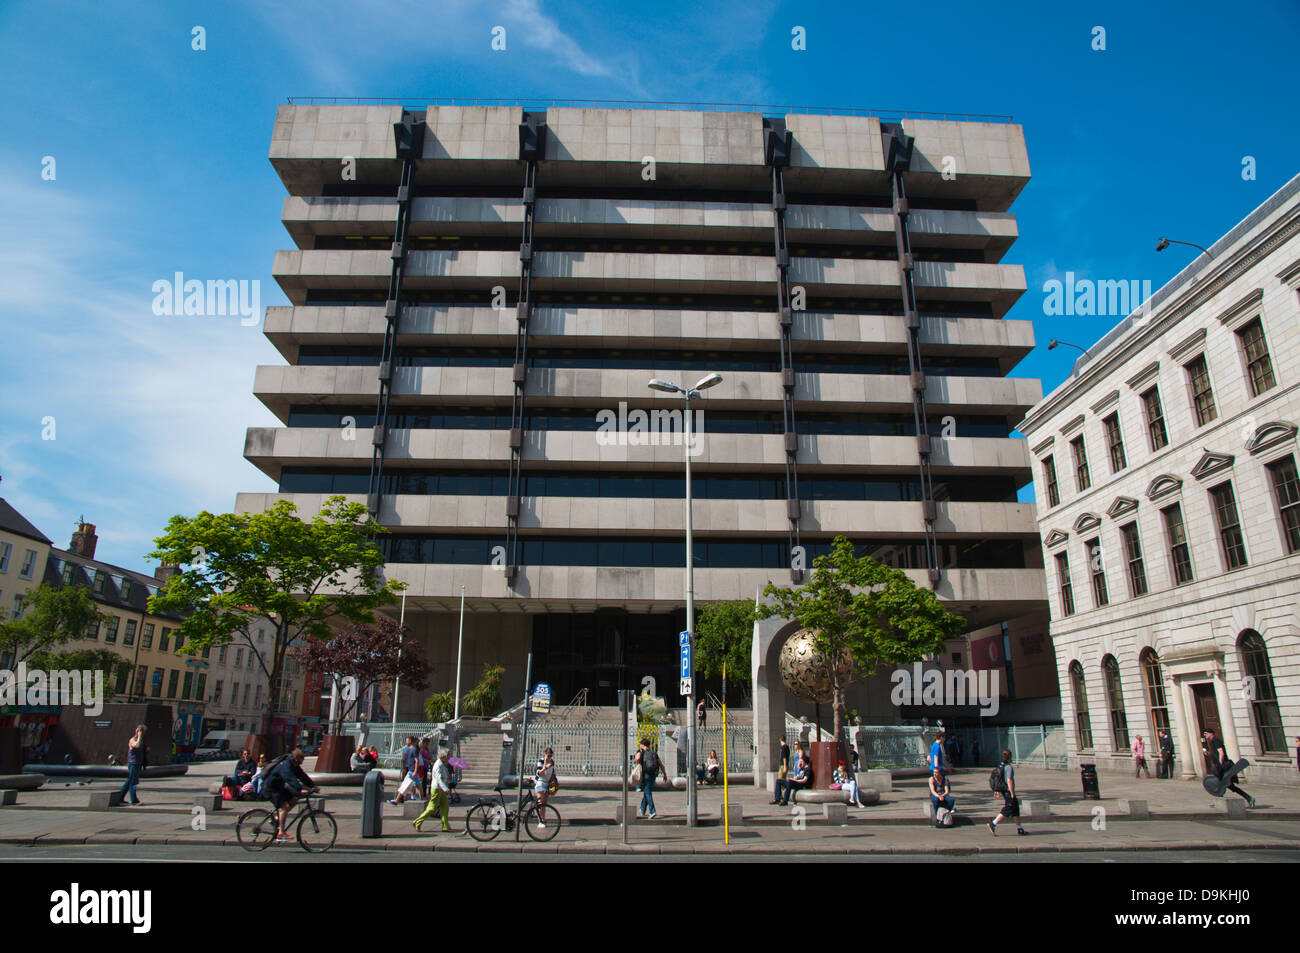 Estilo Brutalist edificio del Banco Central a lo largo de Dame Street, Dublín Irlanda en Europa central Foto de stock